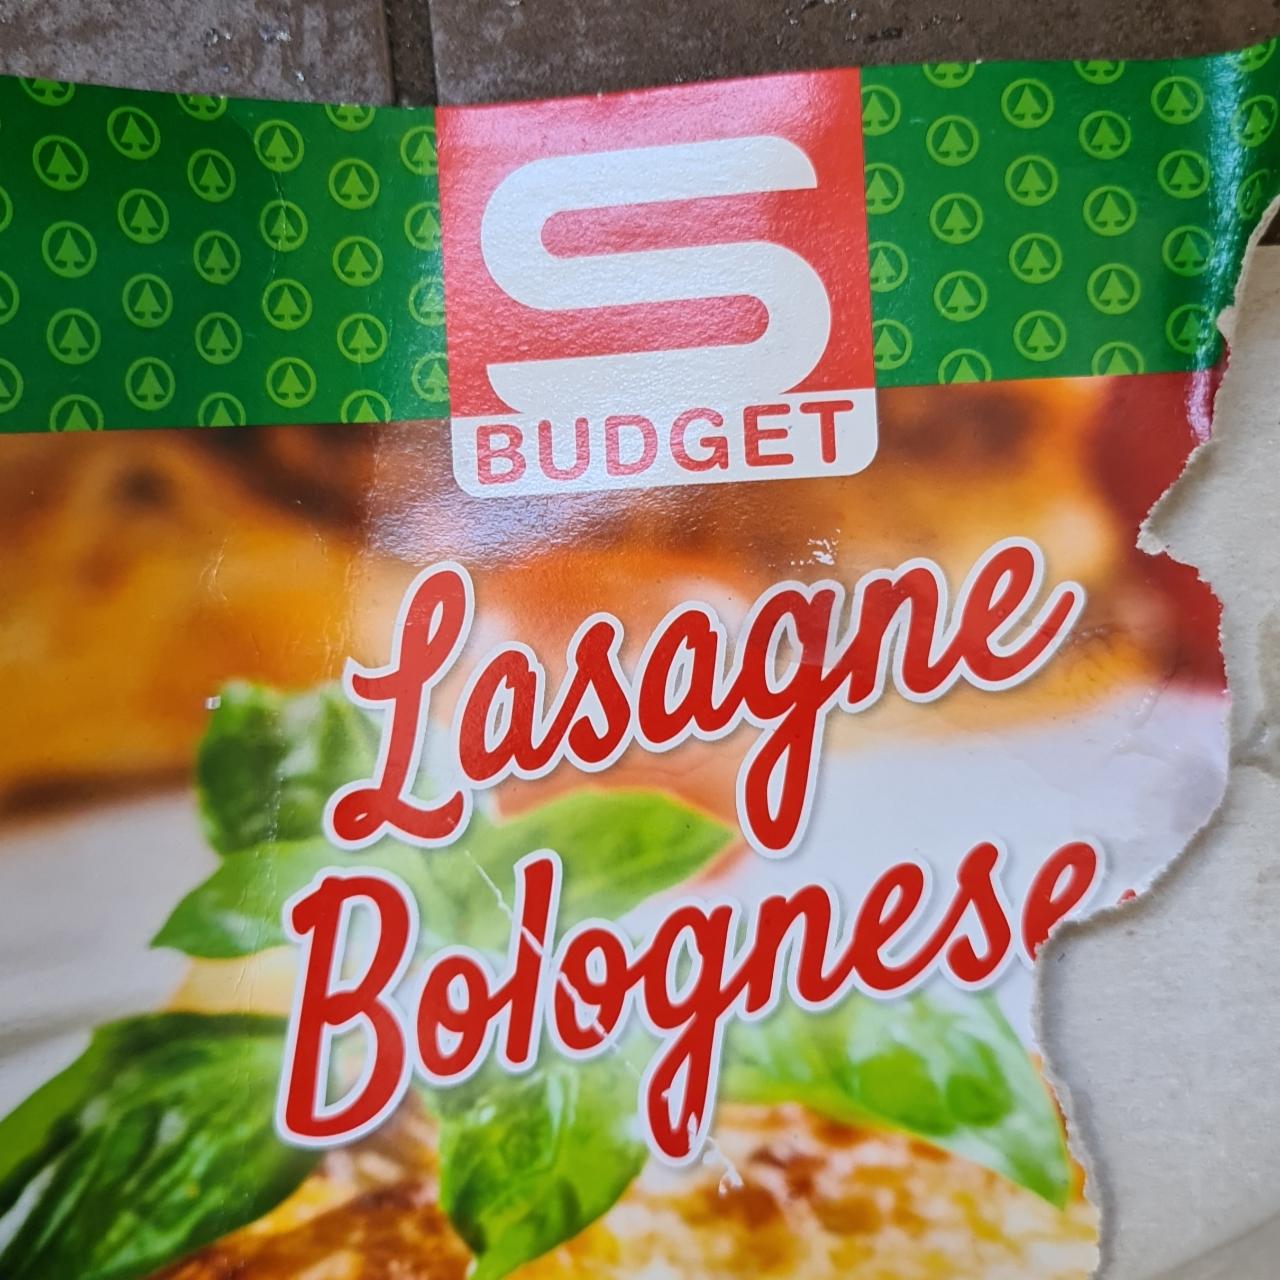 Fotografie - Lasagne Bolognese S Budget